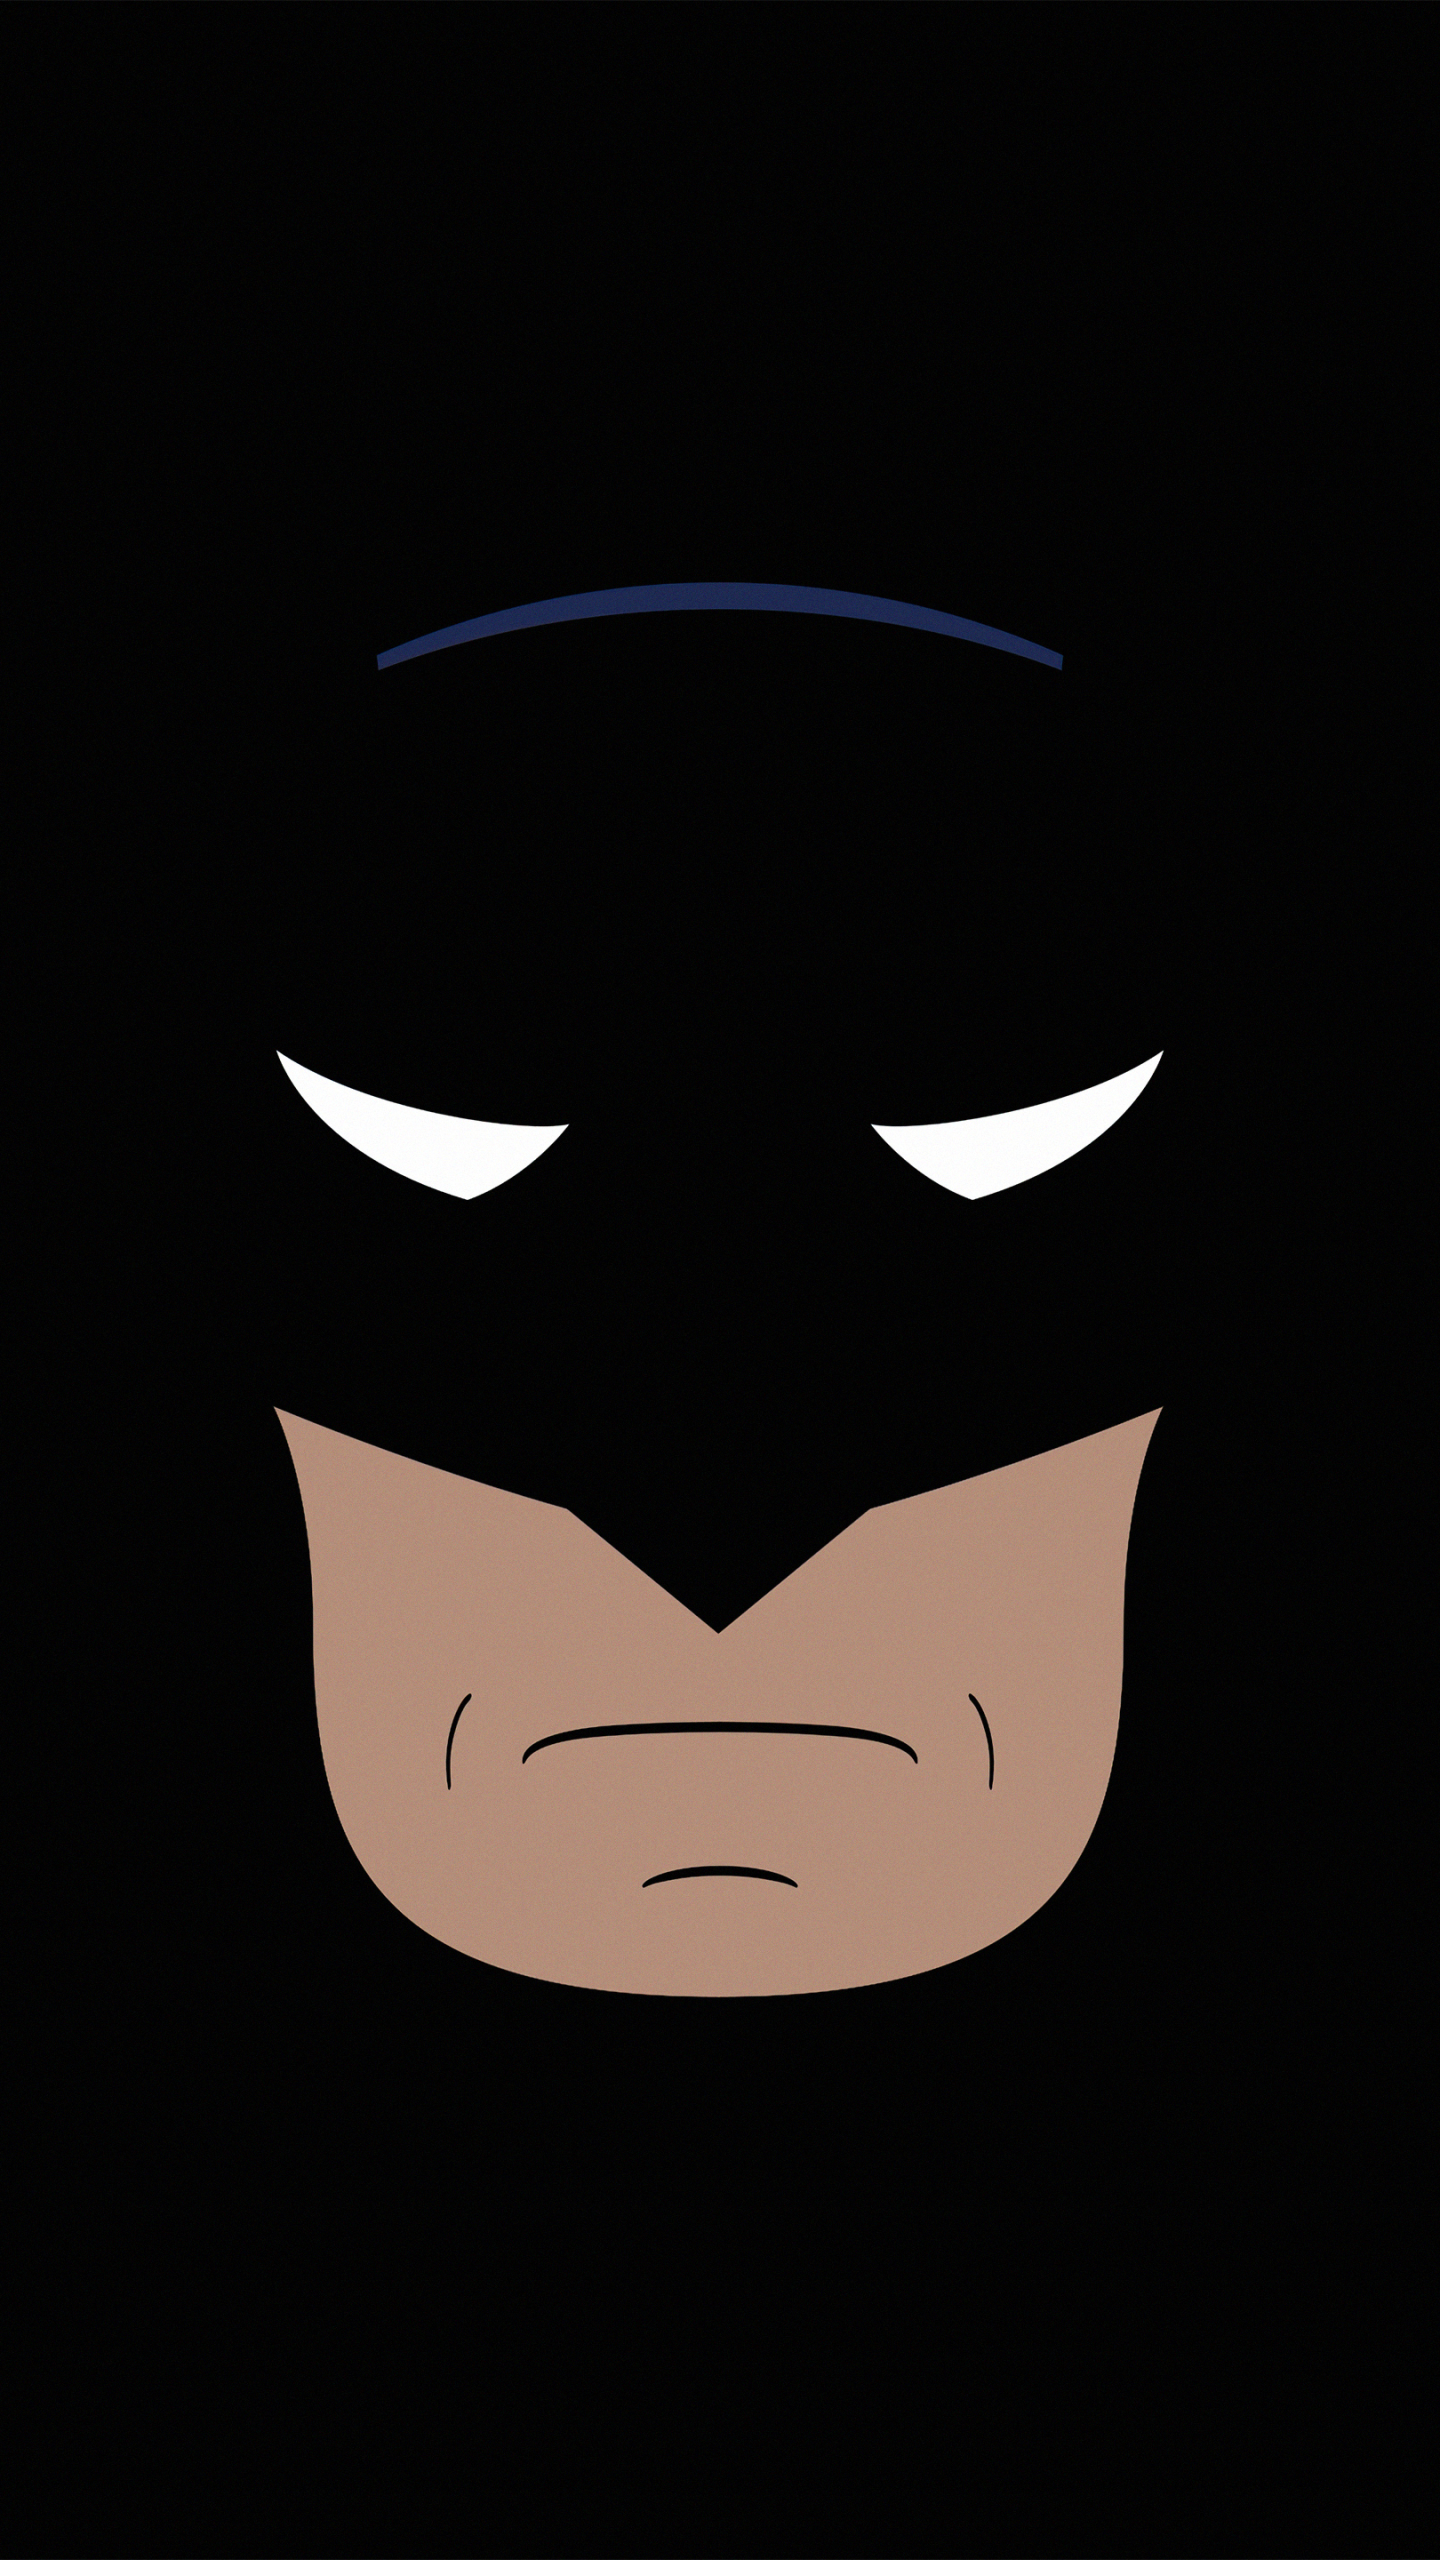 Скачать обои бесплатно Комиксы, Минималистский, Бэтмен, Комиксы Dc картинка на рабочий стол ПК